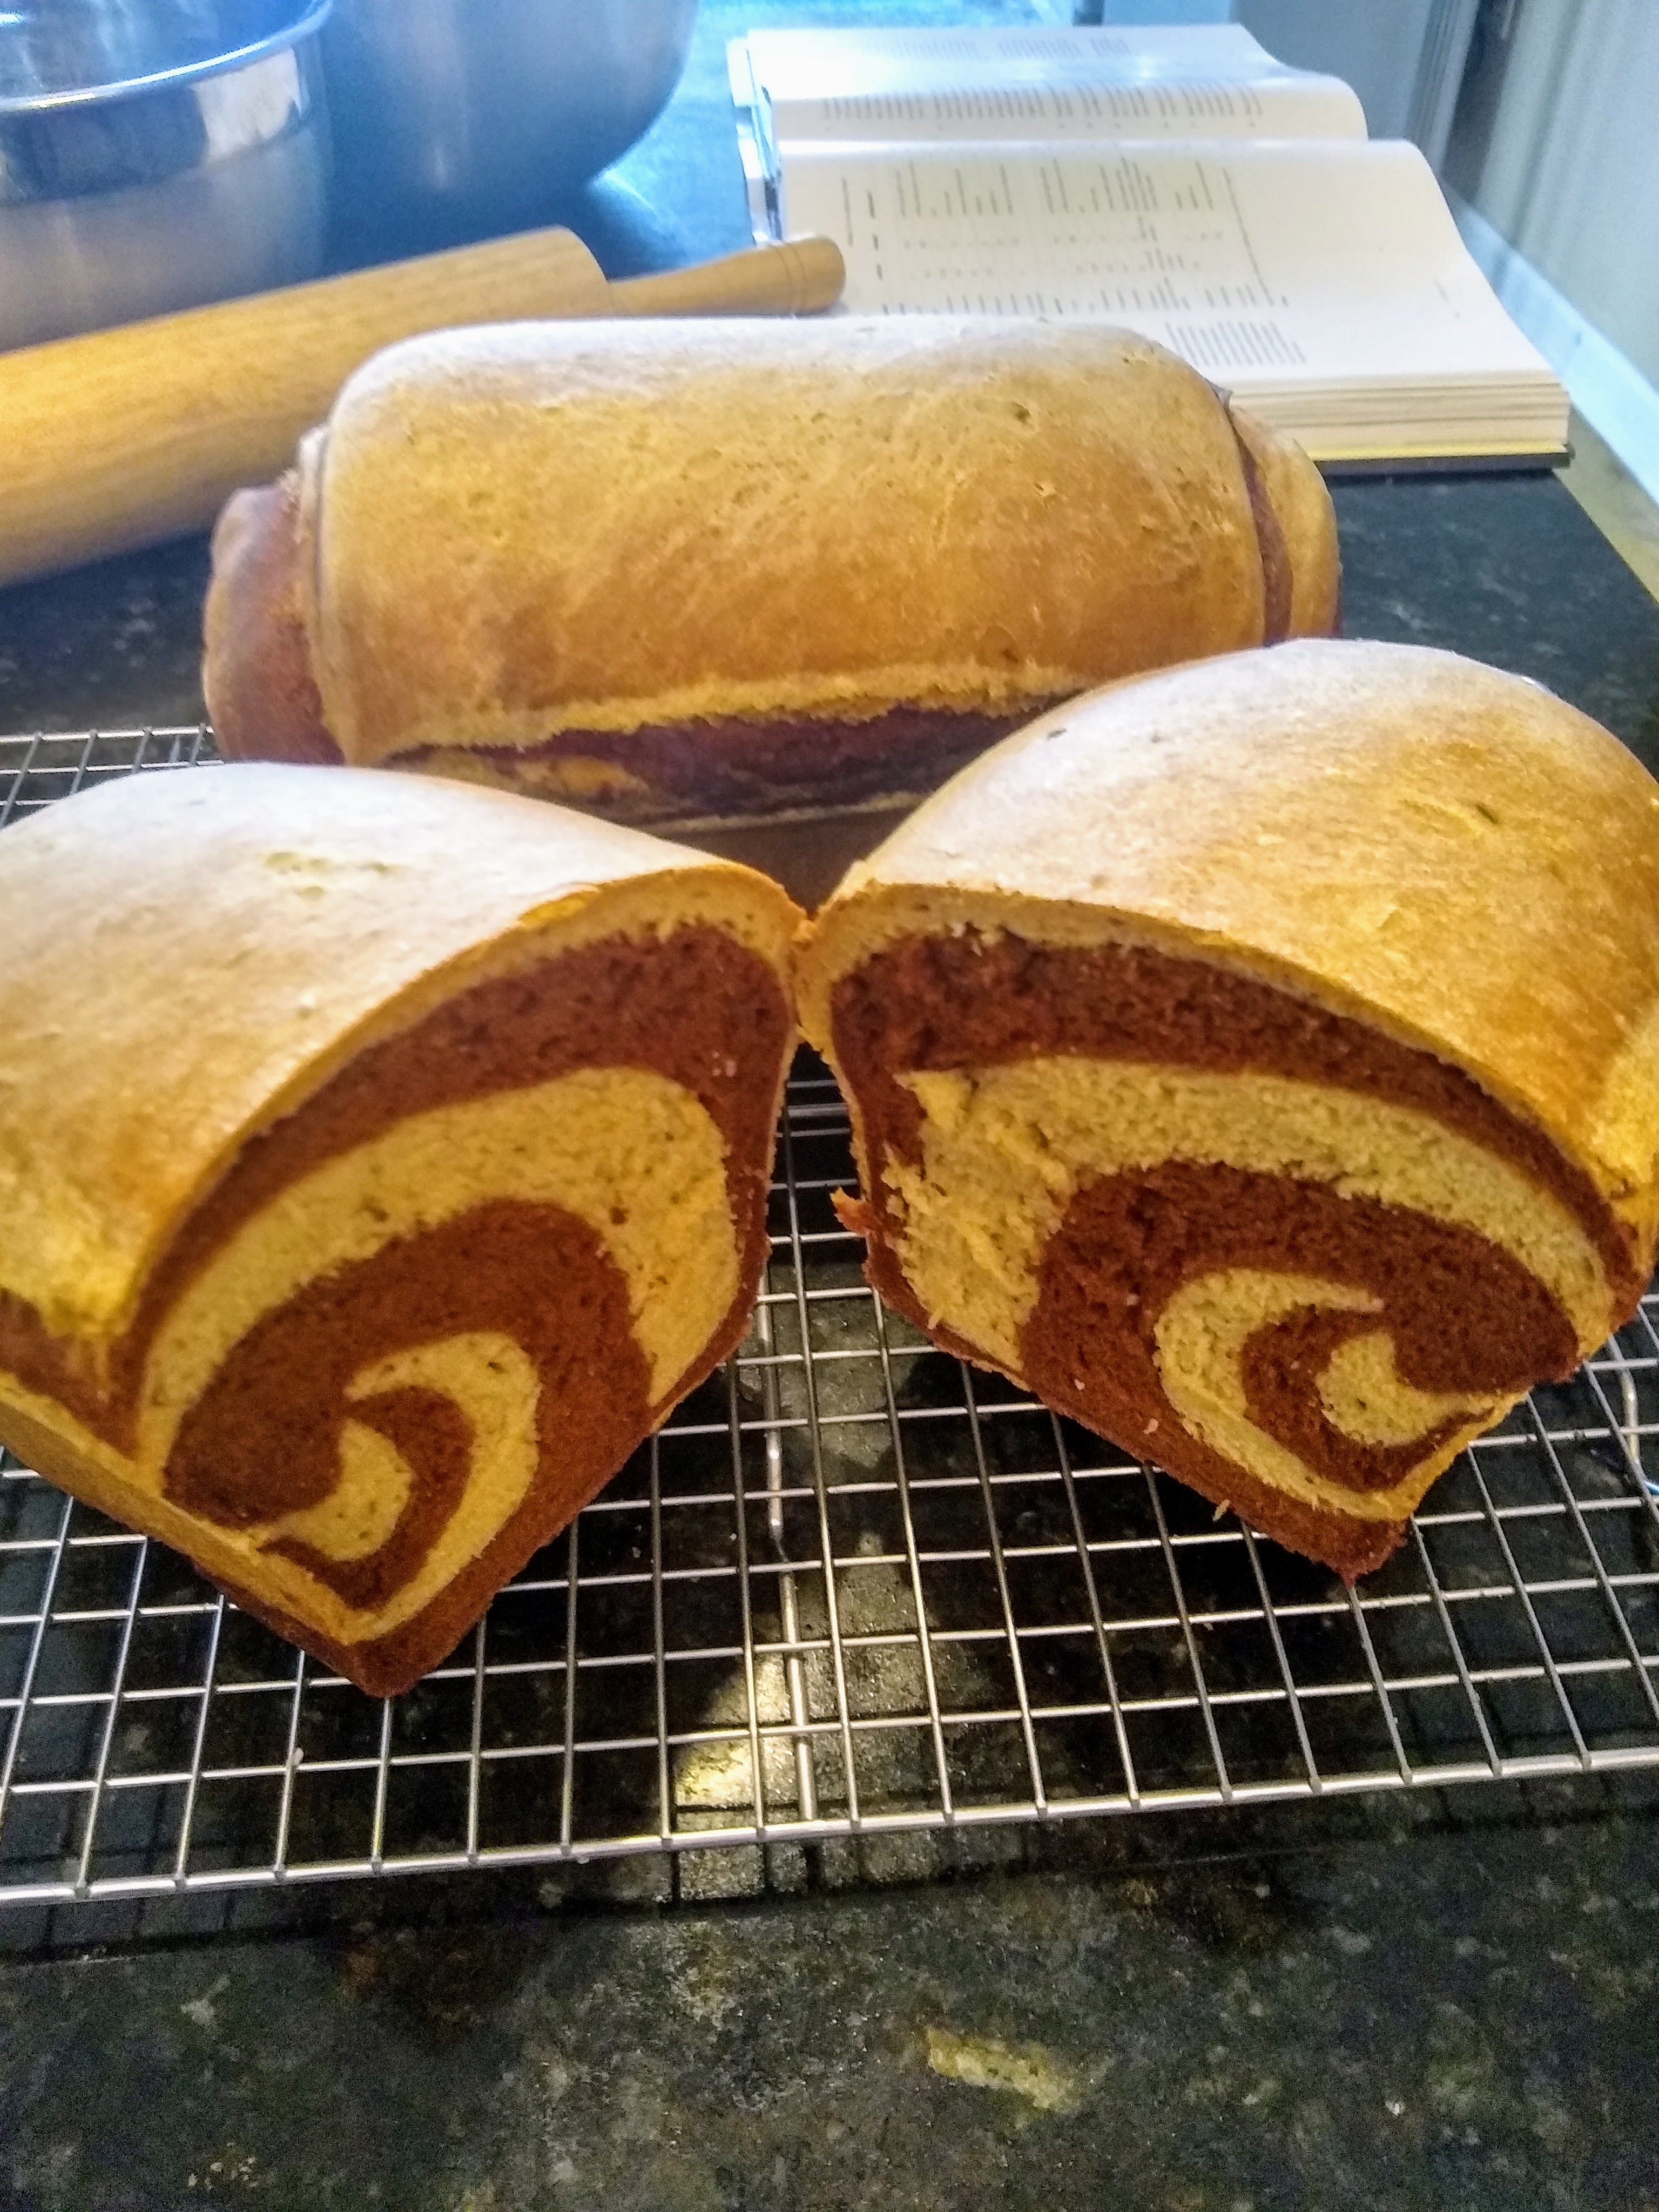 Cut through a loaf of marbled rye bread